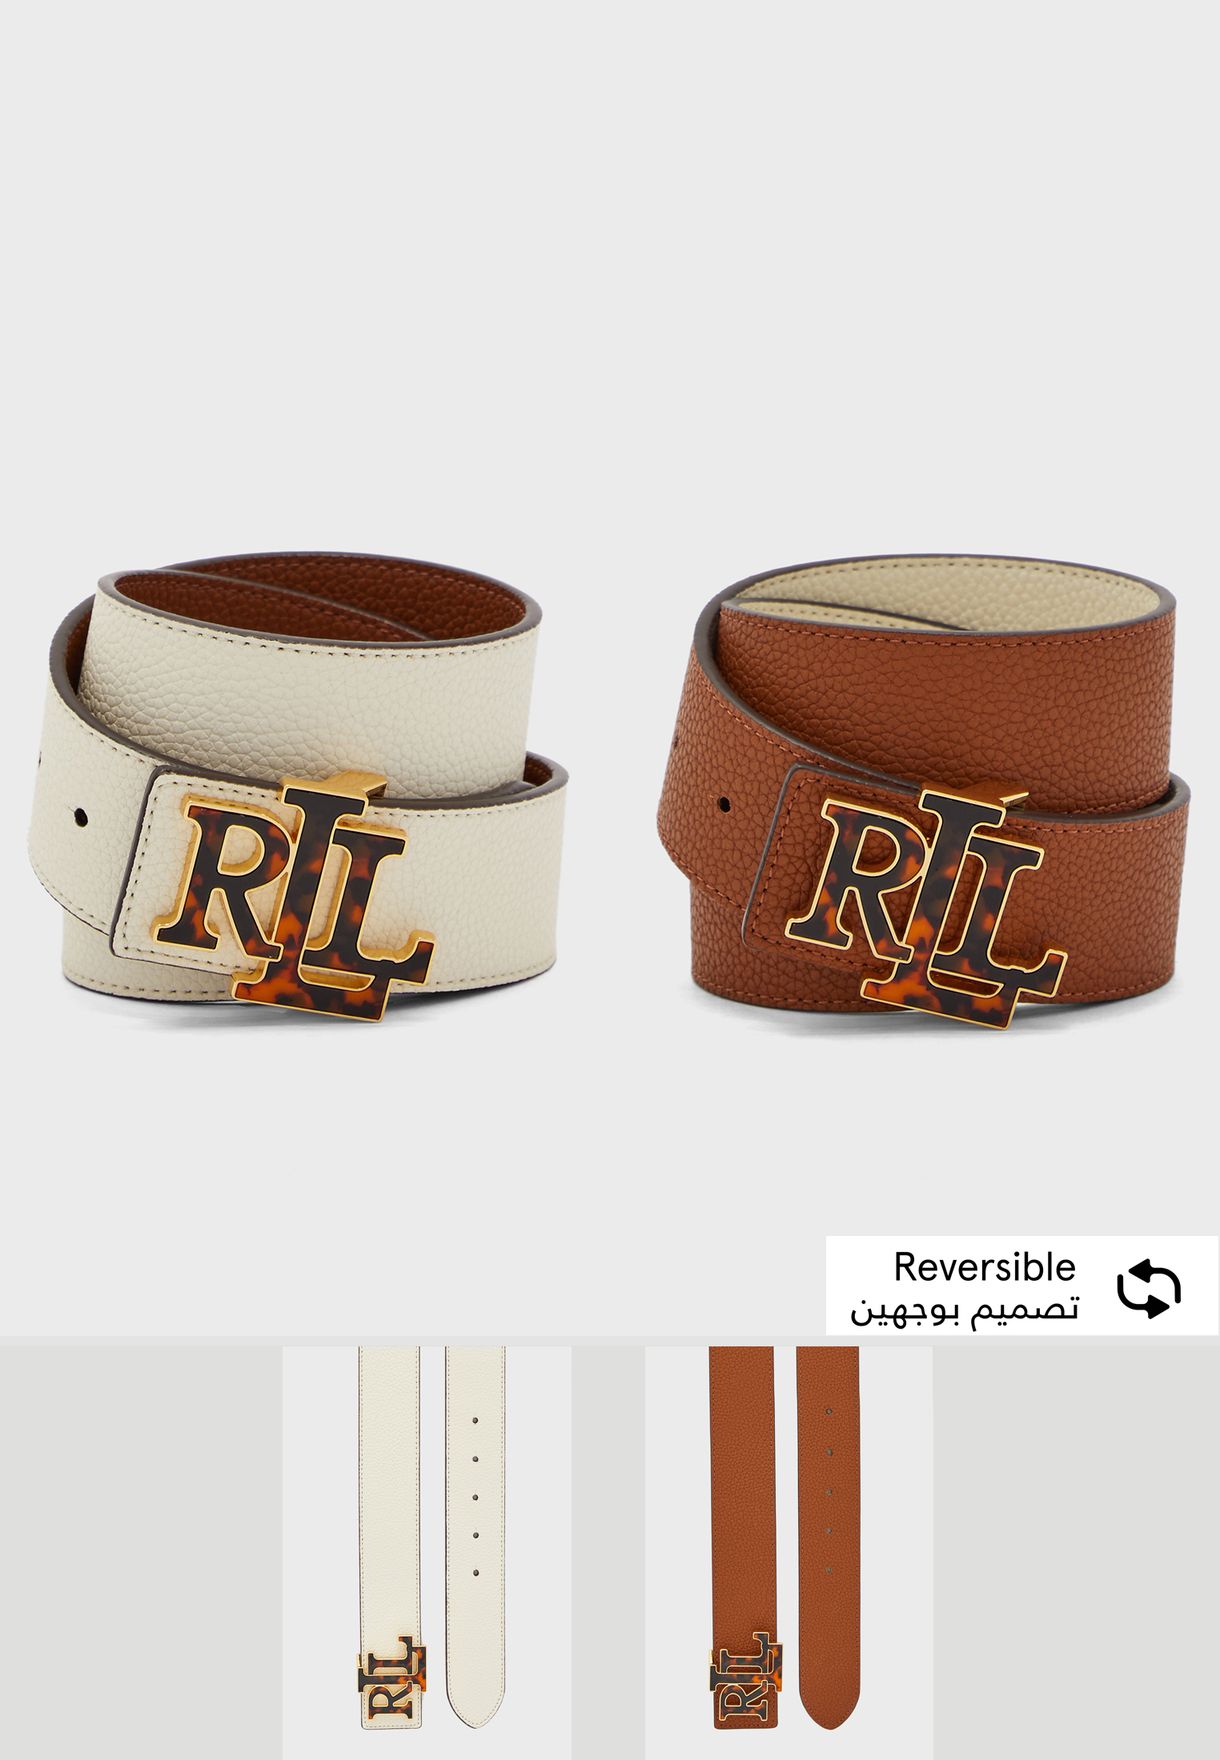 ralph lauren women's reversible belt